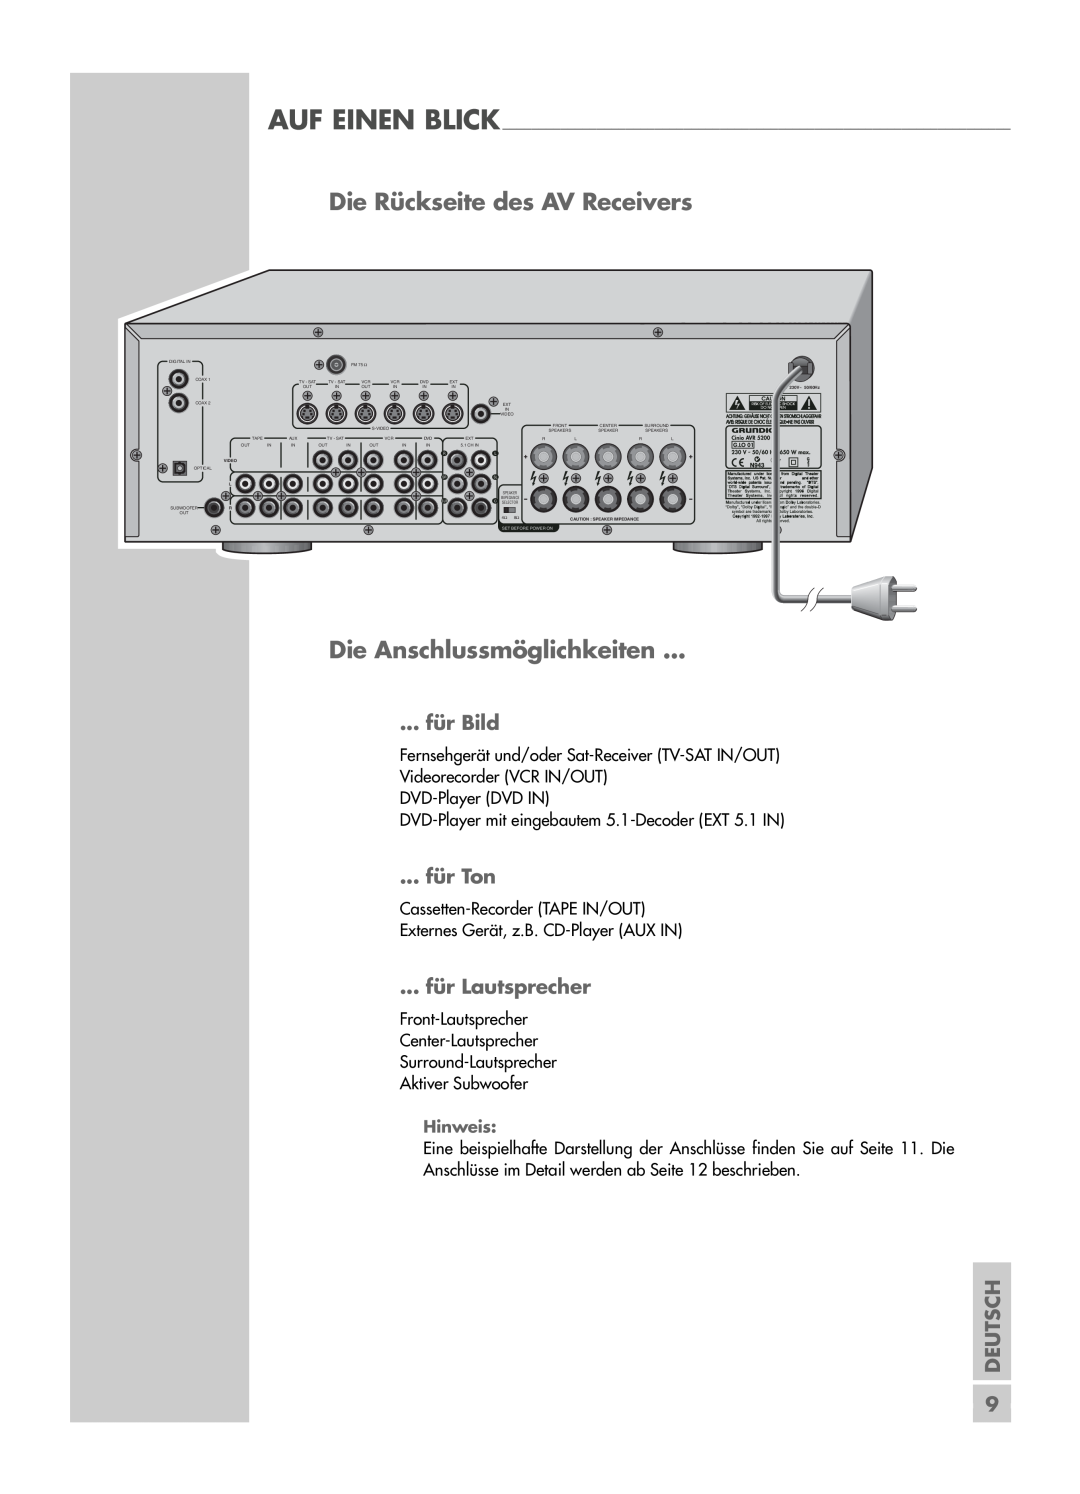 Grundig AVR 5200 DD manual Die Rückseite des AV Receivers, Die Anschlussmöglichkeiten, für Bild, für Ton, für Lautsprecher 